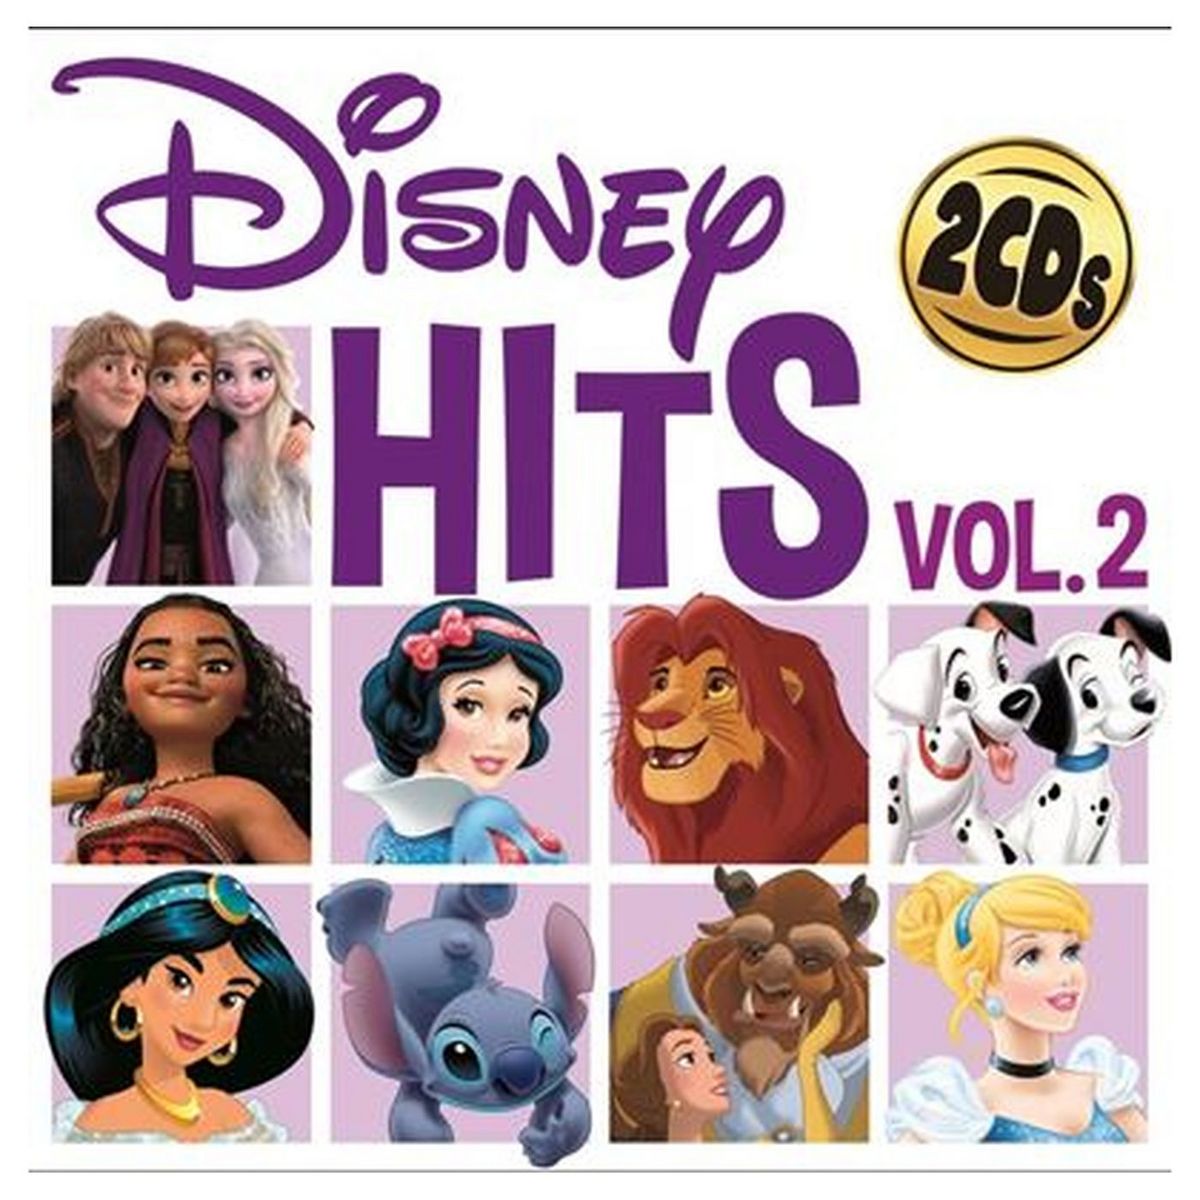 Disney Hits Vol. 2 CD